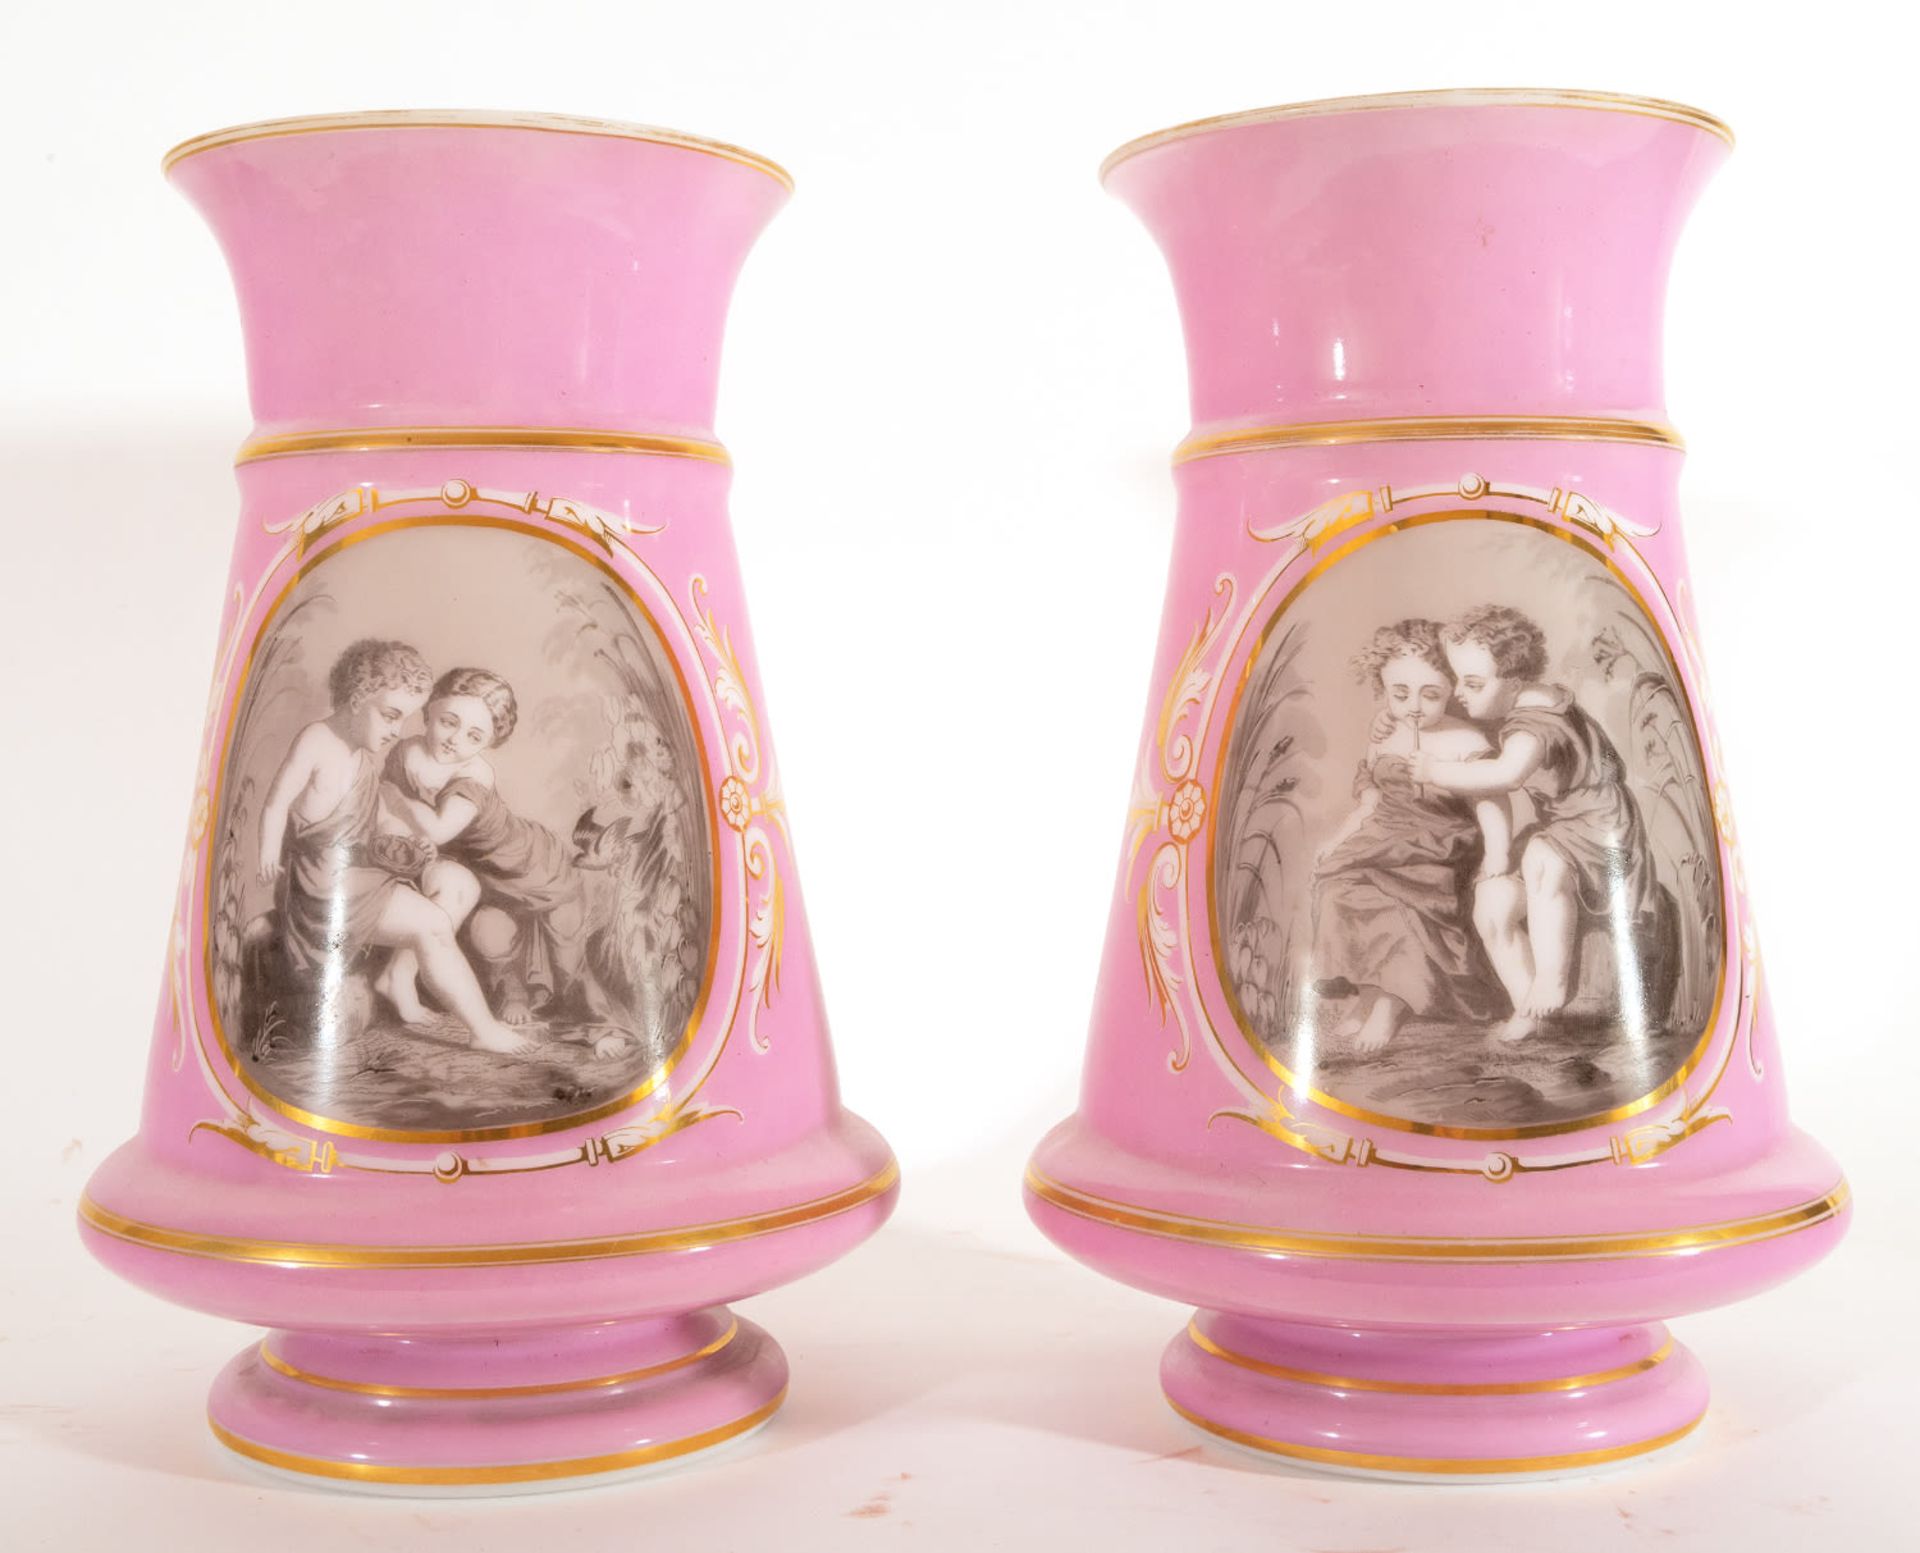 Pair of Opaline Vases with Romantic Scenes, 19th century - Bild 2 aus 10